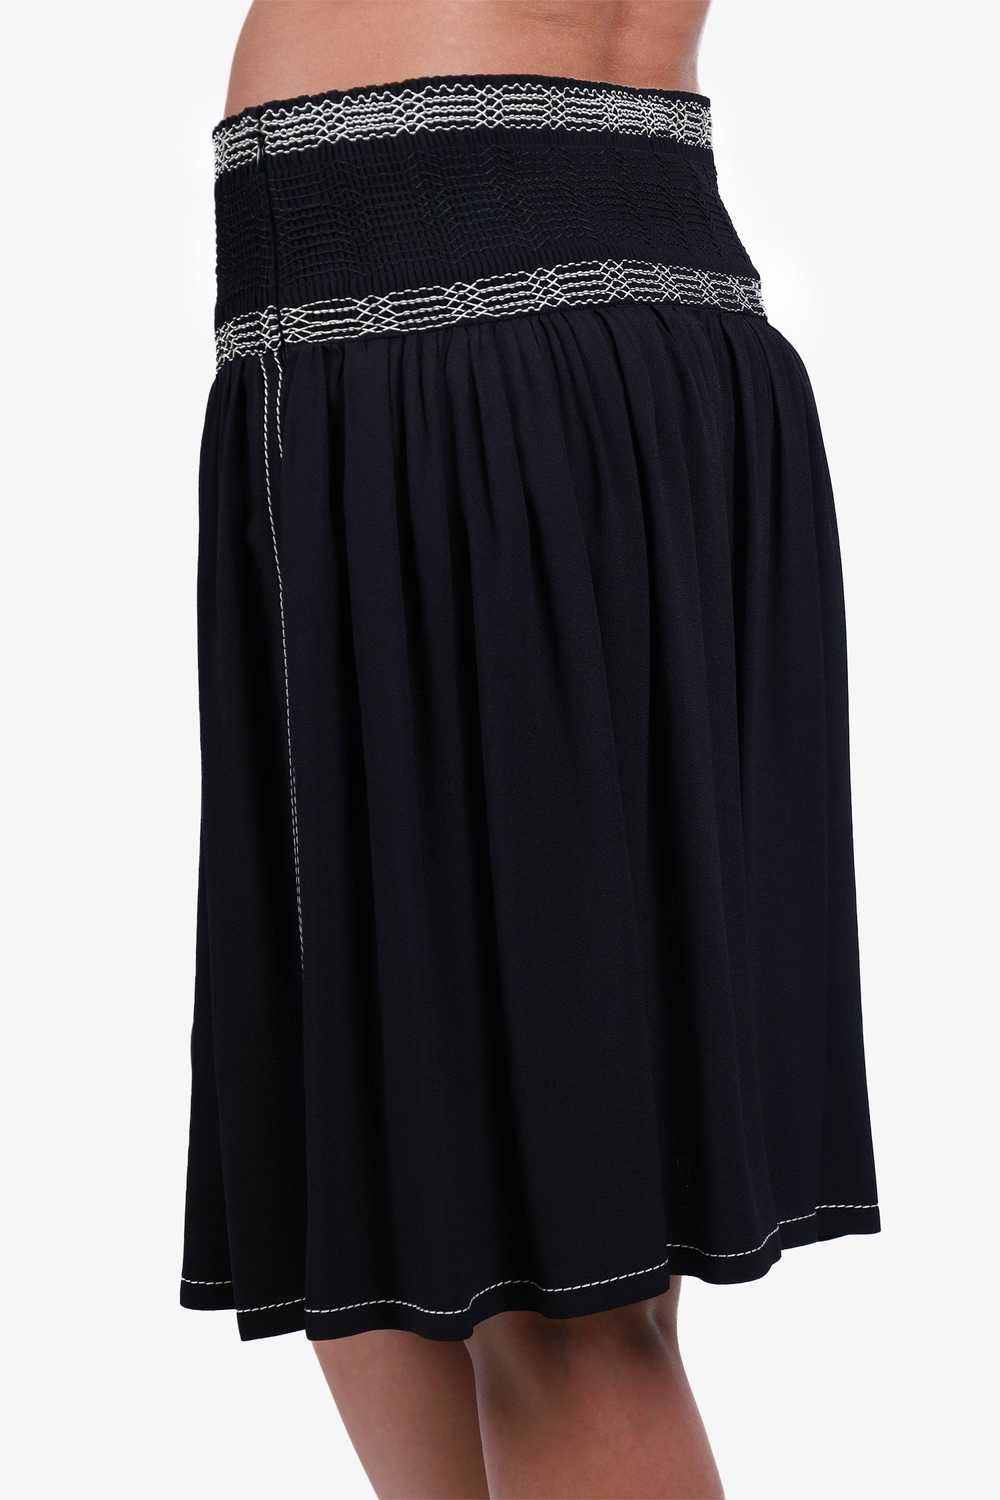 Prada Black Pleated Midi Skirt Size 36 - image 4